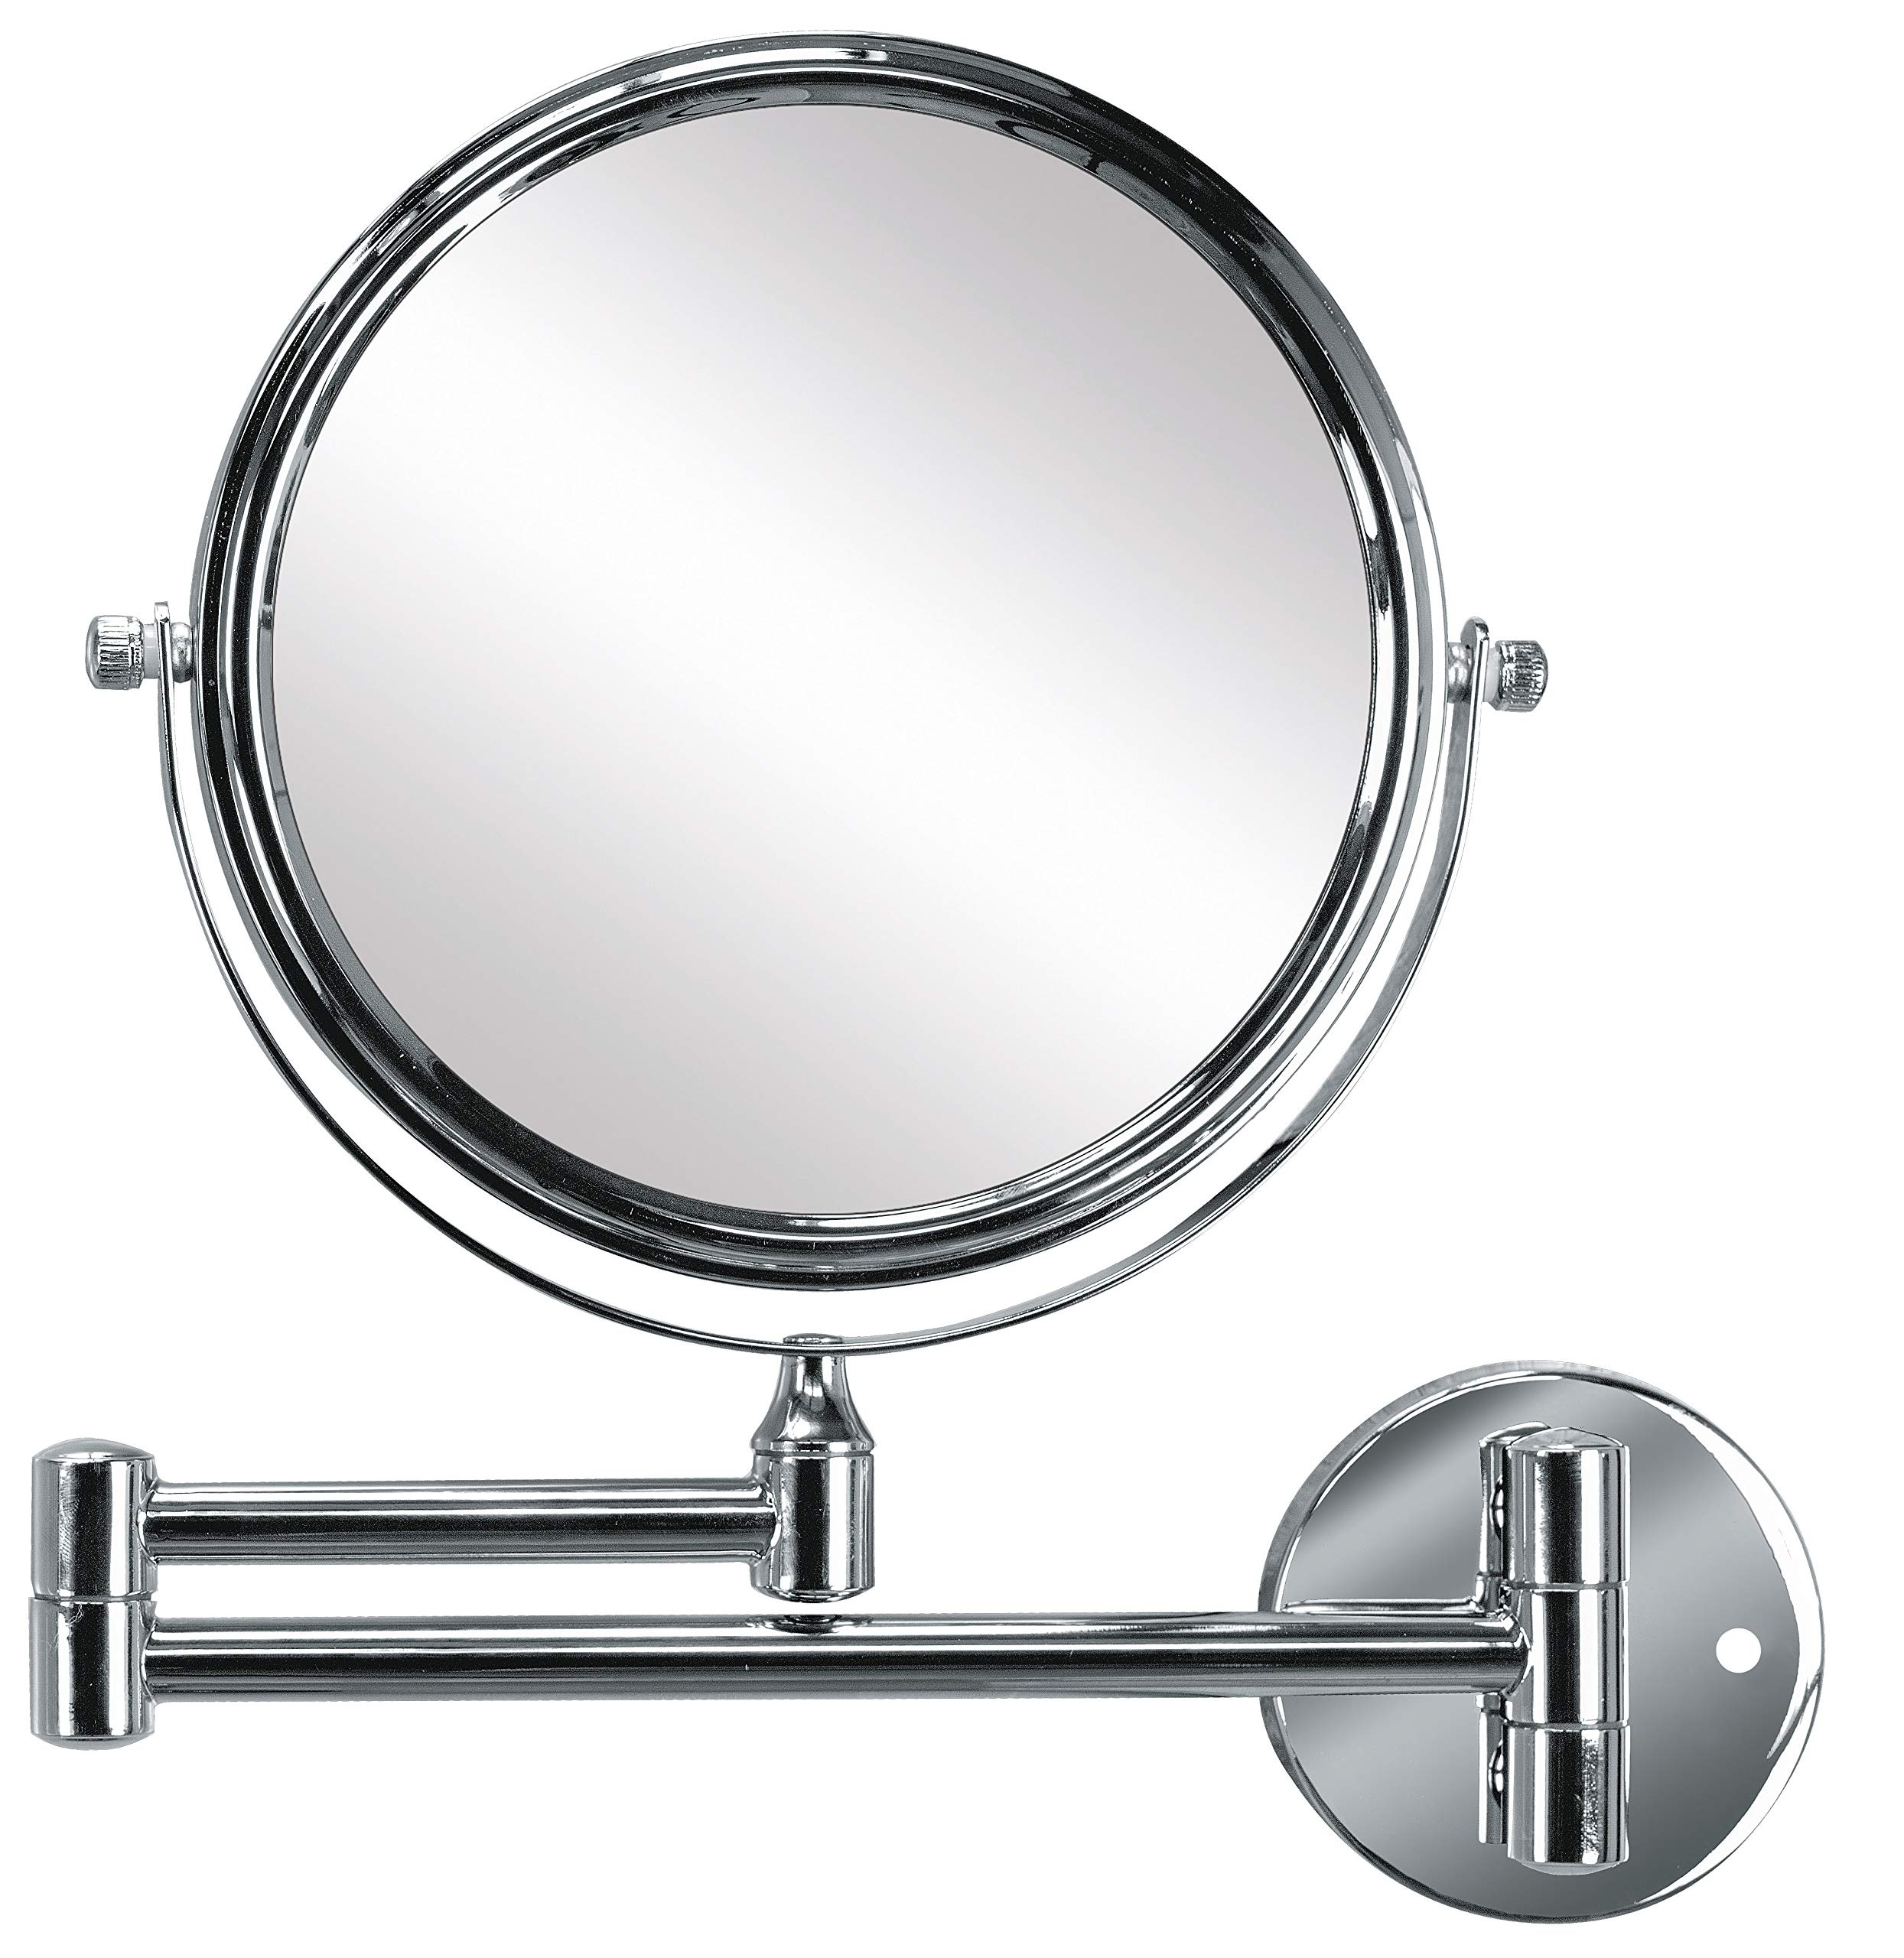 Kleine Wolke Kosmetikspiegel Ridge Mirror mit 3-facher Vergrößerung, Größe: 24,4 x 26 x 3,5 cm, Material: Metall/Glas